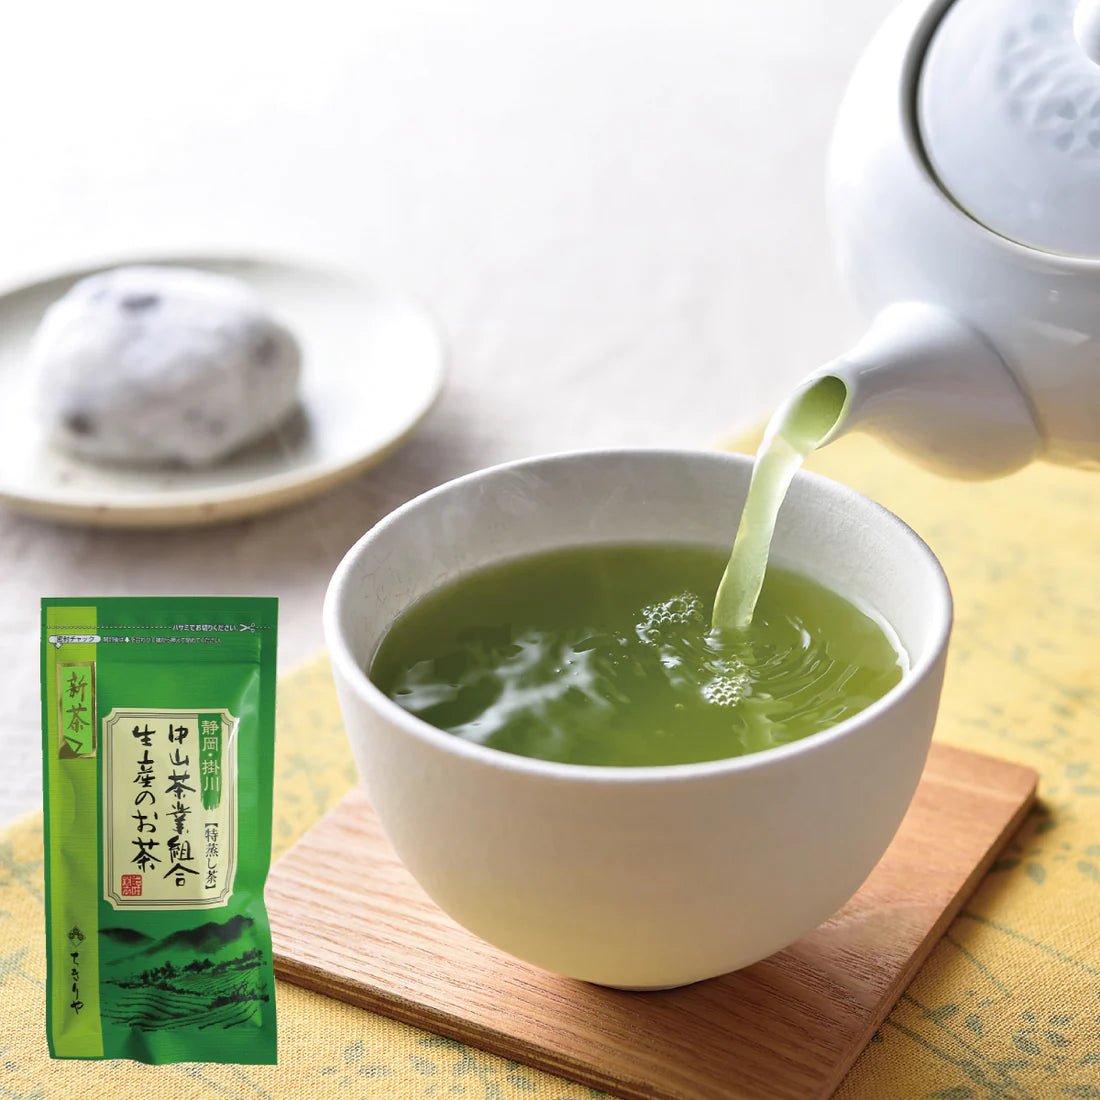 Shincha « Tokumushi » de la coopérative Nakayama (thé vert japonais à l'étuvage prolongé) - 40g - feuilles de thé en vrac